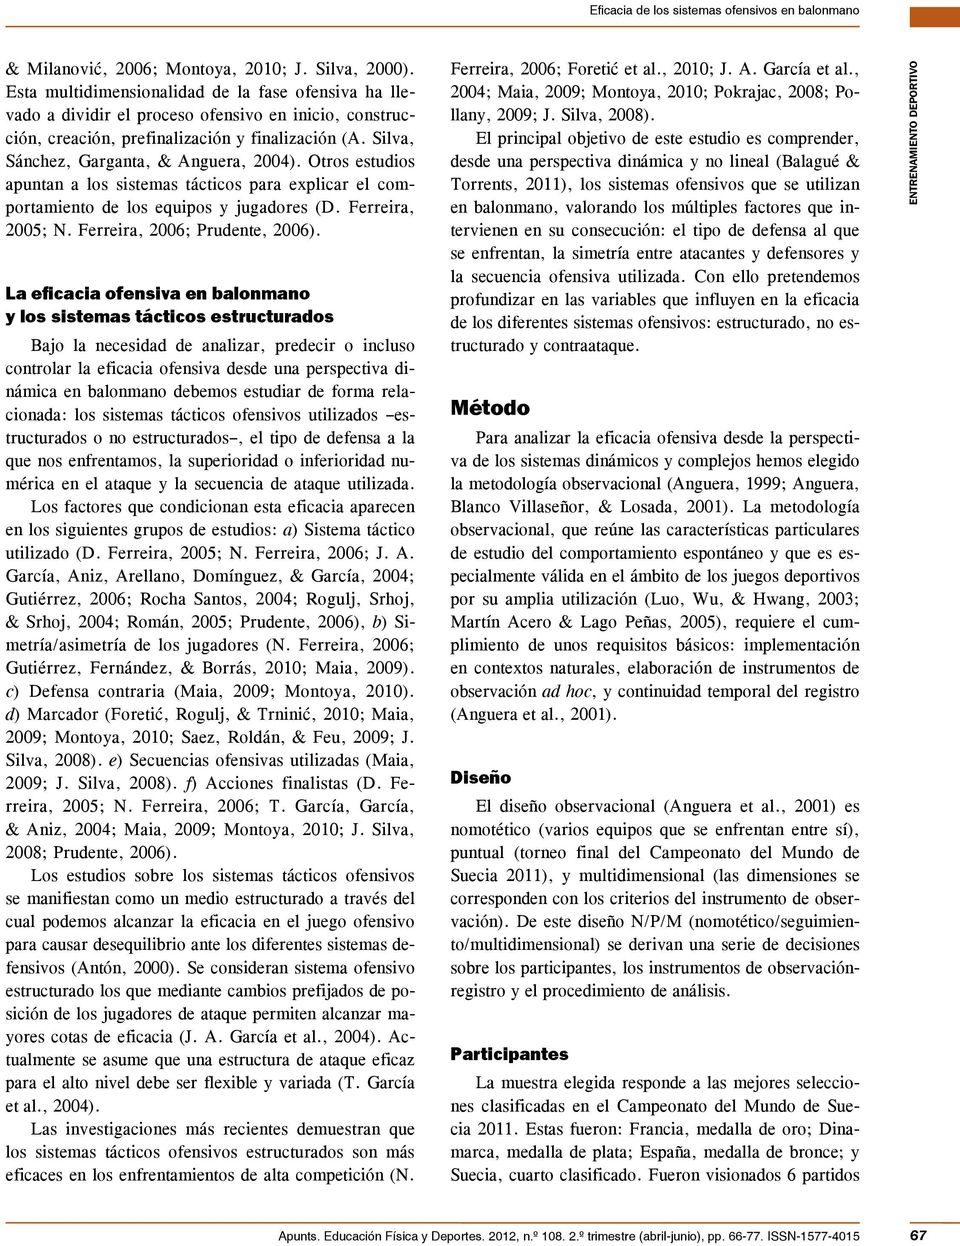 Otros estudios apuntan a los sistemas tácticos para explicar el comportamiento de los equipos y jugadores (D. Ferreira, 200; N. Ferreira, 2006; Prudente, 2006).